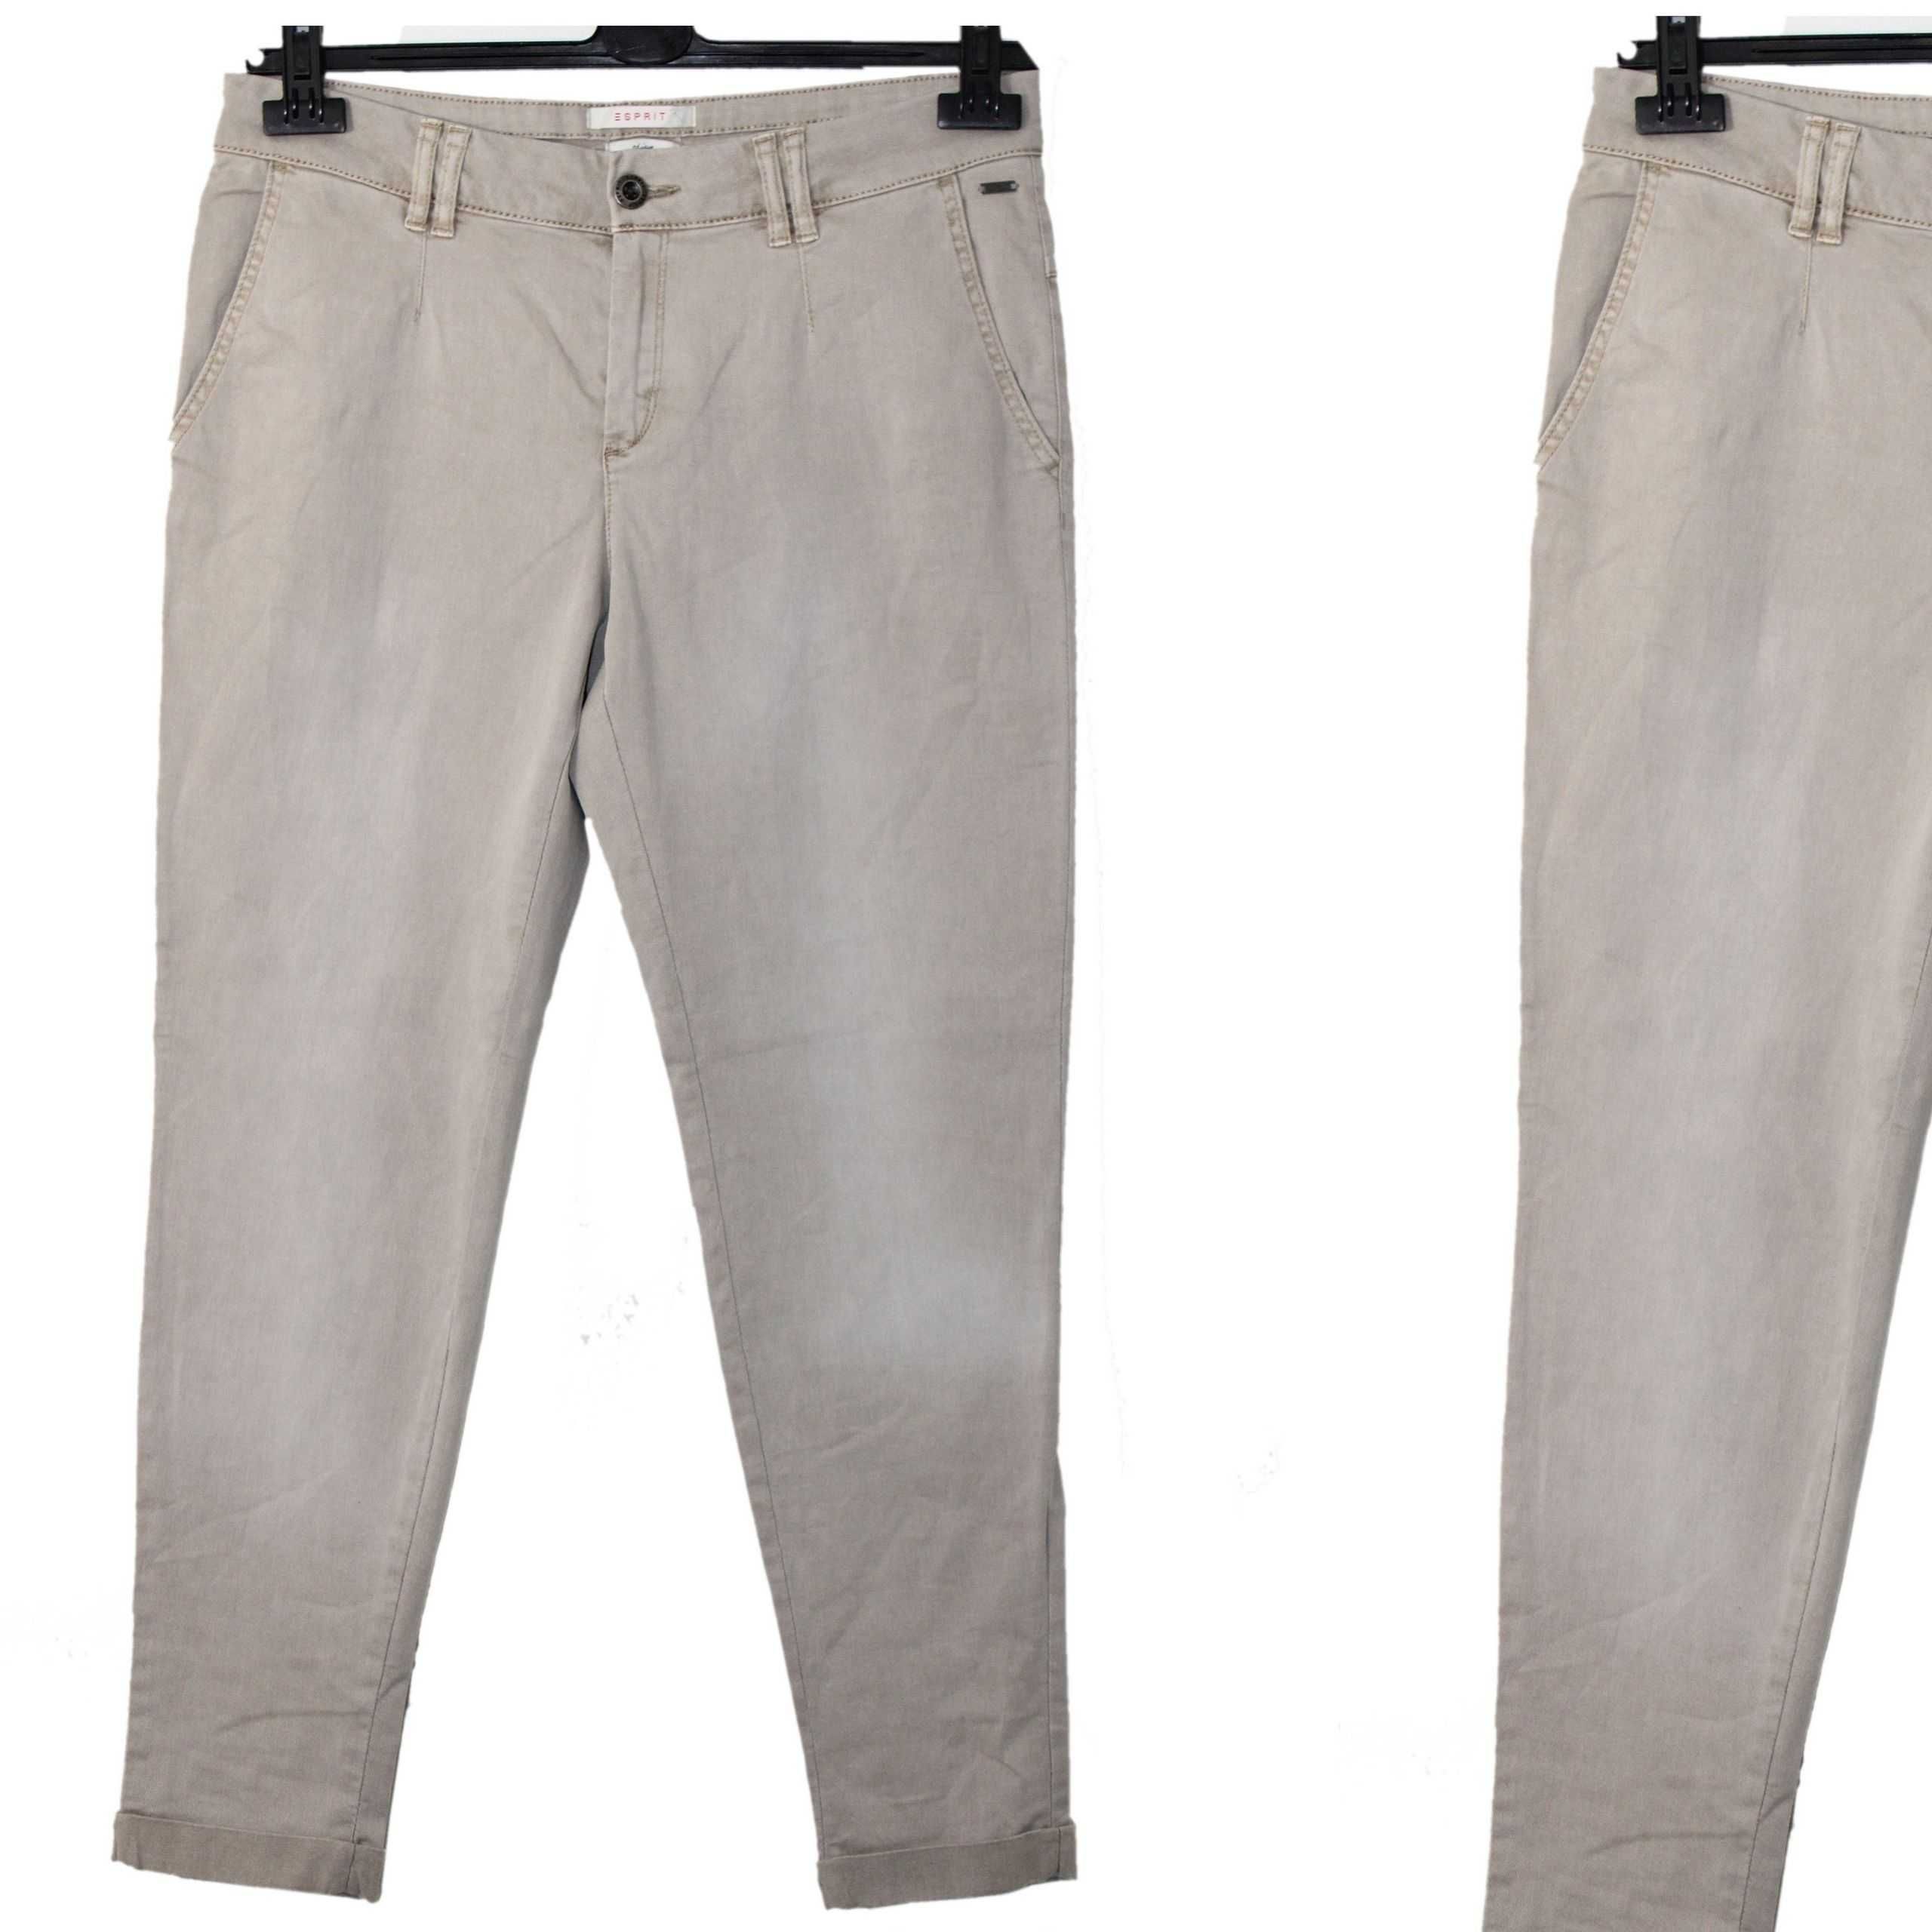 w6 ESPRIT Wygodne Damskie Spodnie Jeans Chinosy 38 M